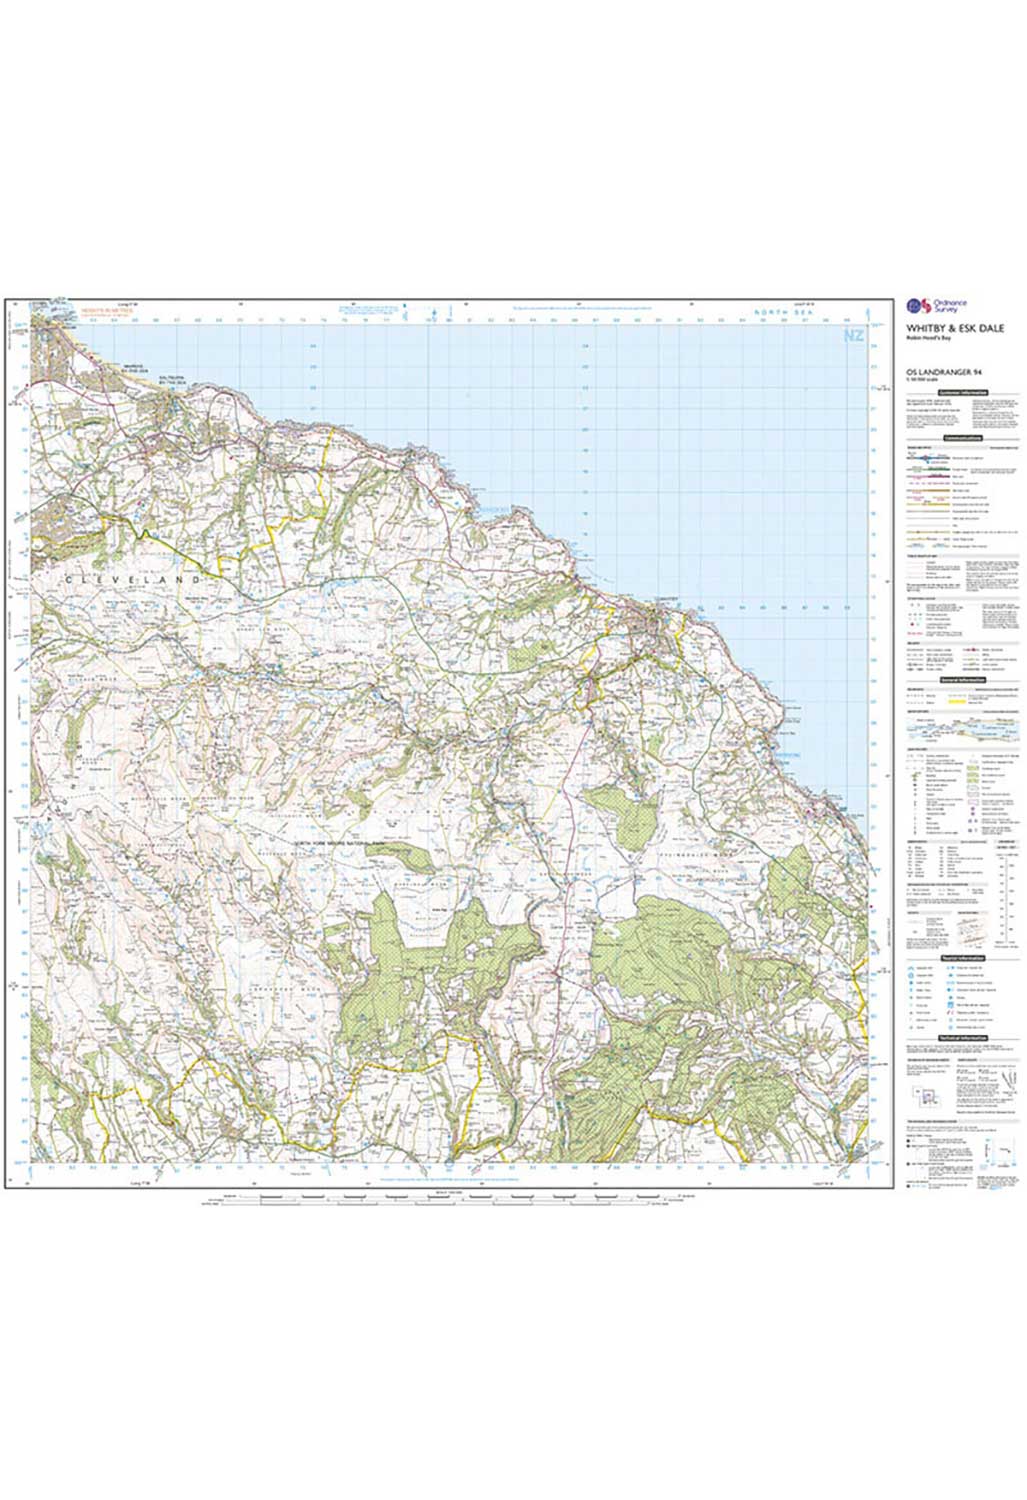 Ordnance Survey Whitby, Esk Dale & Robin Hood's Bay - Landranger 94 Map